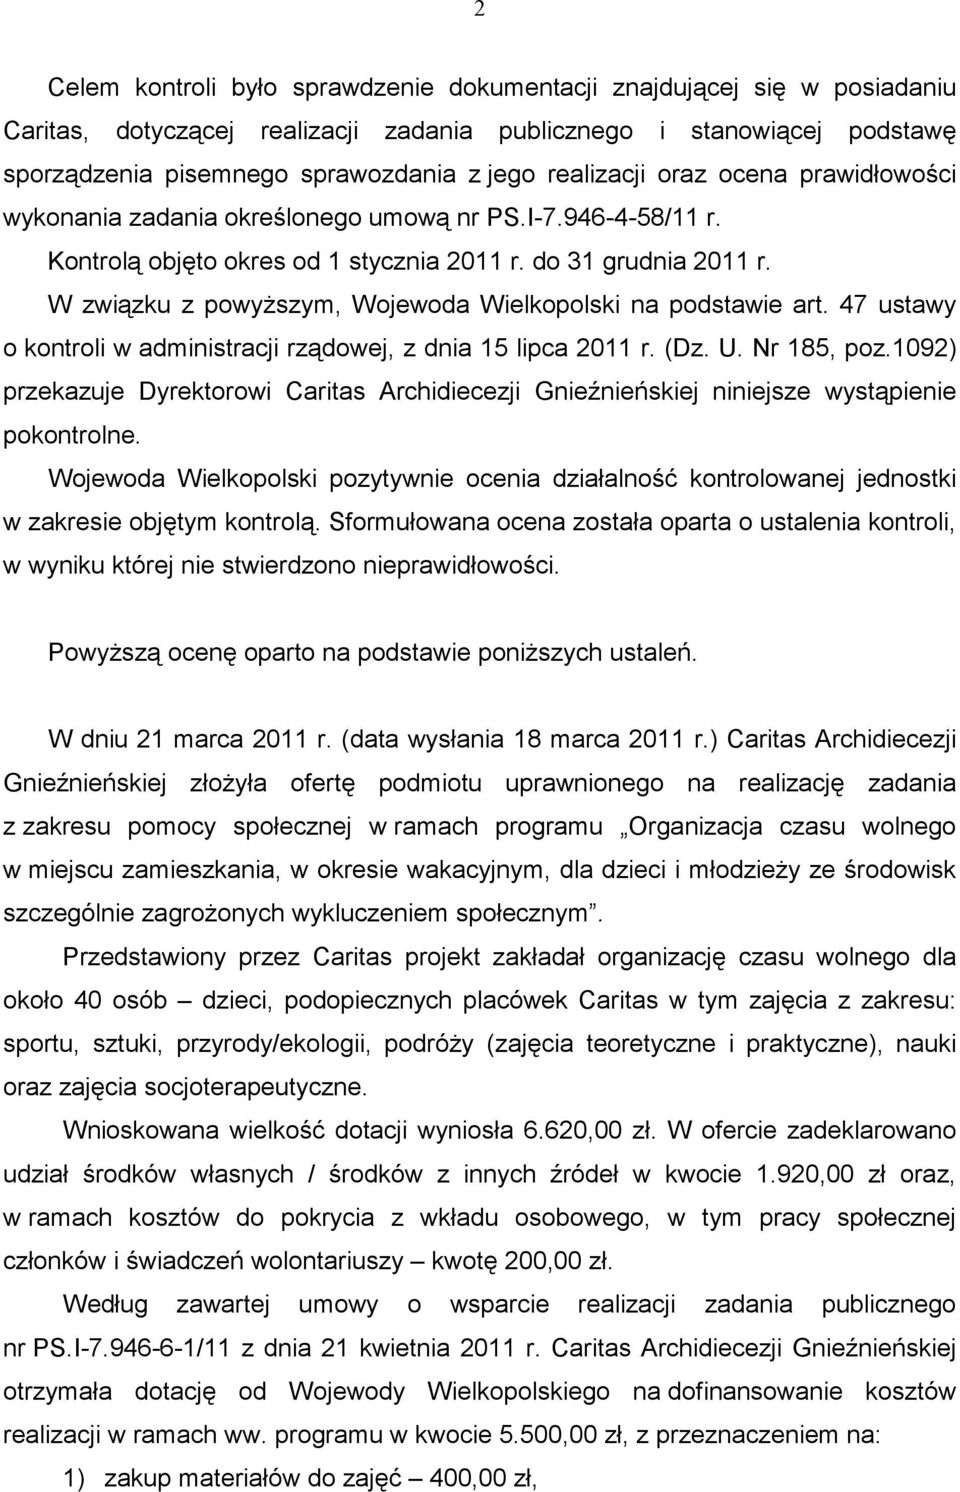 W związku z powyŝszym, Wojewoda Wielkopolski na podstawie art. 47 ustawy o kontroli w administracji rządowej, z dnia 15 lipca 2011 r. (Dz. U. Nr 185, poz.